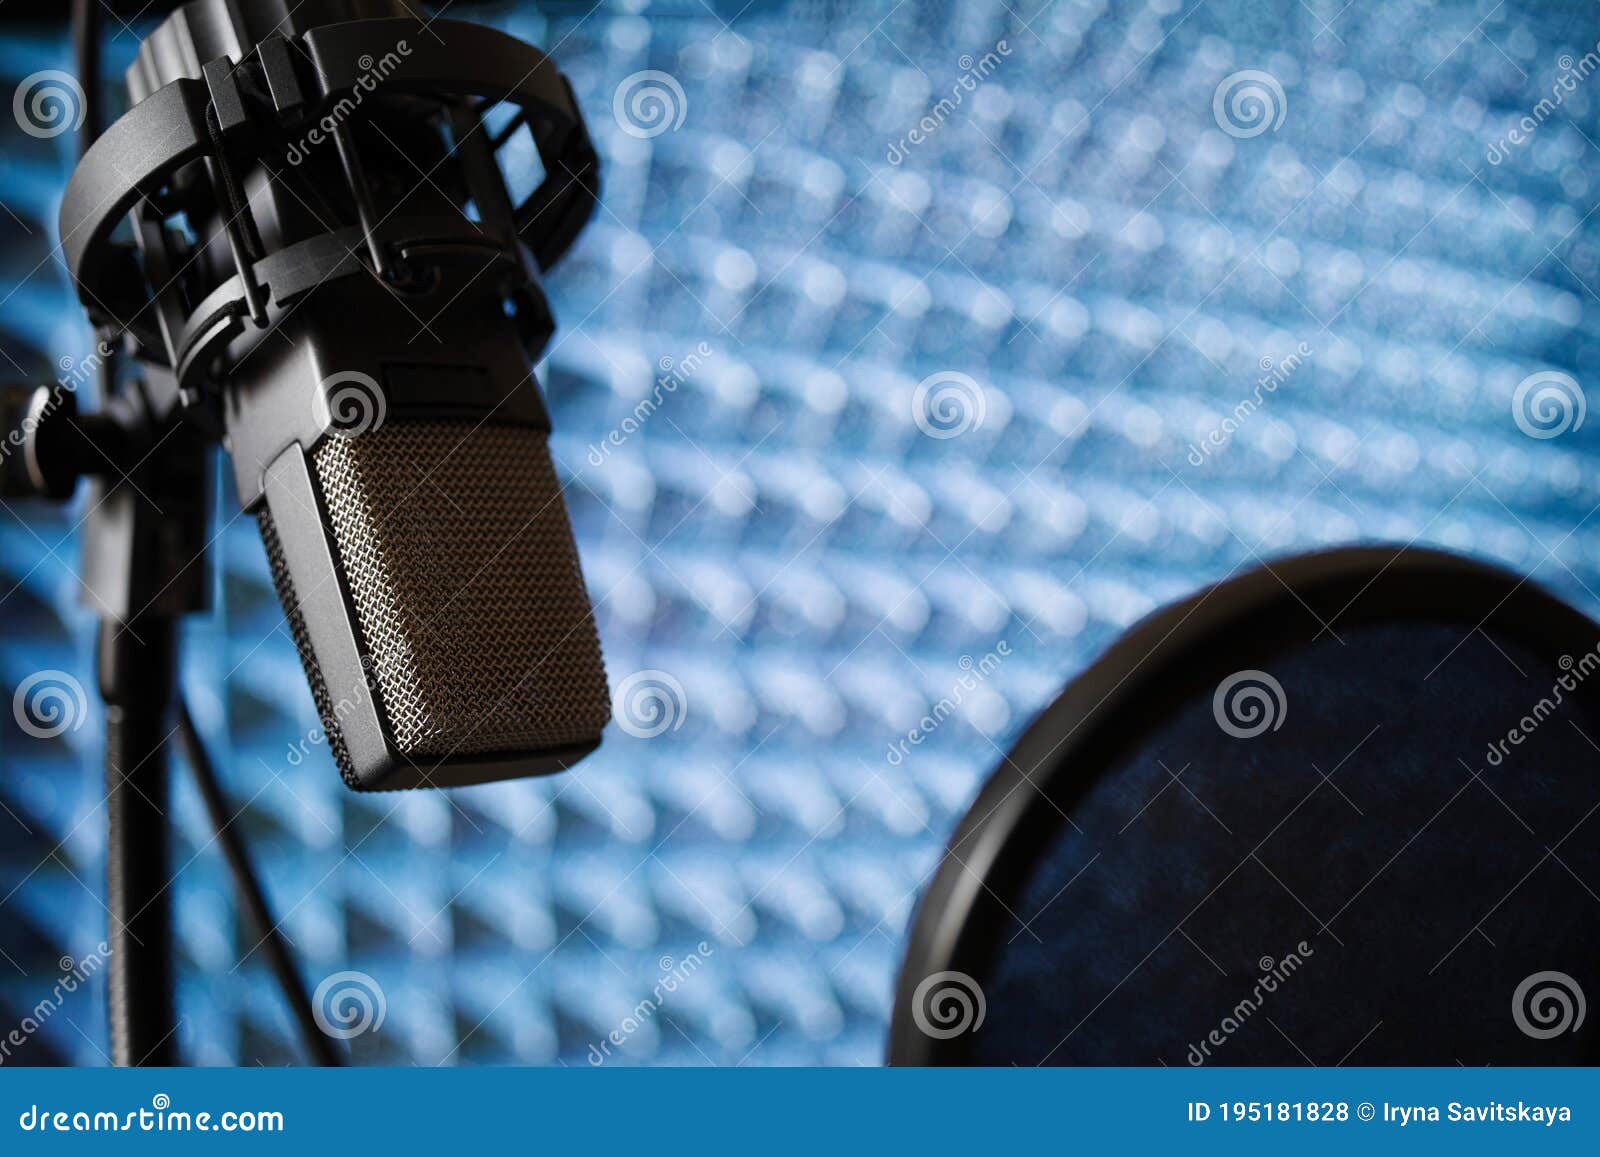 https://thumbs.dreamstime.com/z/microphone-dans-le-studio-d-enregistrement-sur-fond-de-la-mousse-acoustique-avec-filtre-bruit-fin-panneau-vers-haut-du-foyer-mou-195181828.jpg